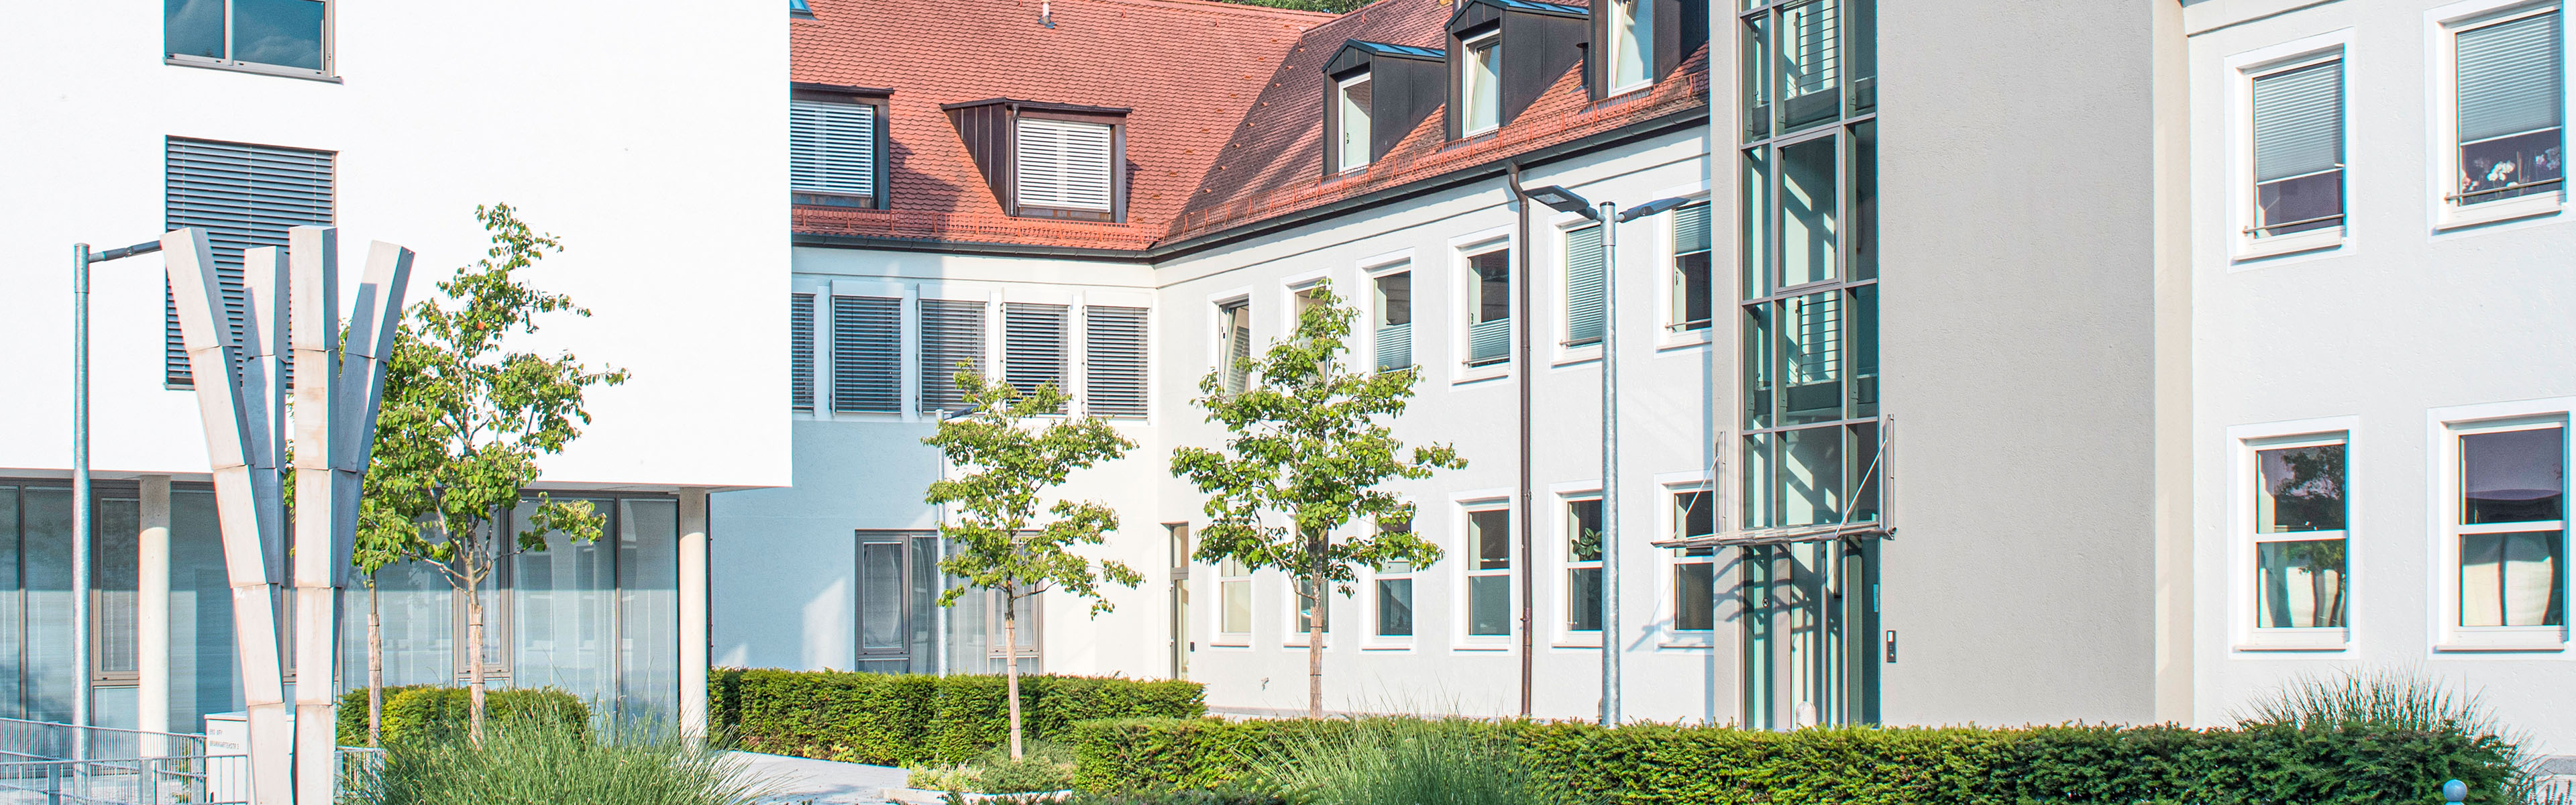 Innenhof des Gebäudes der Stadtwerke Dachau, Altbau und Neubau mit Bäumen im Hof